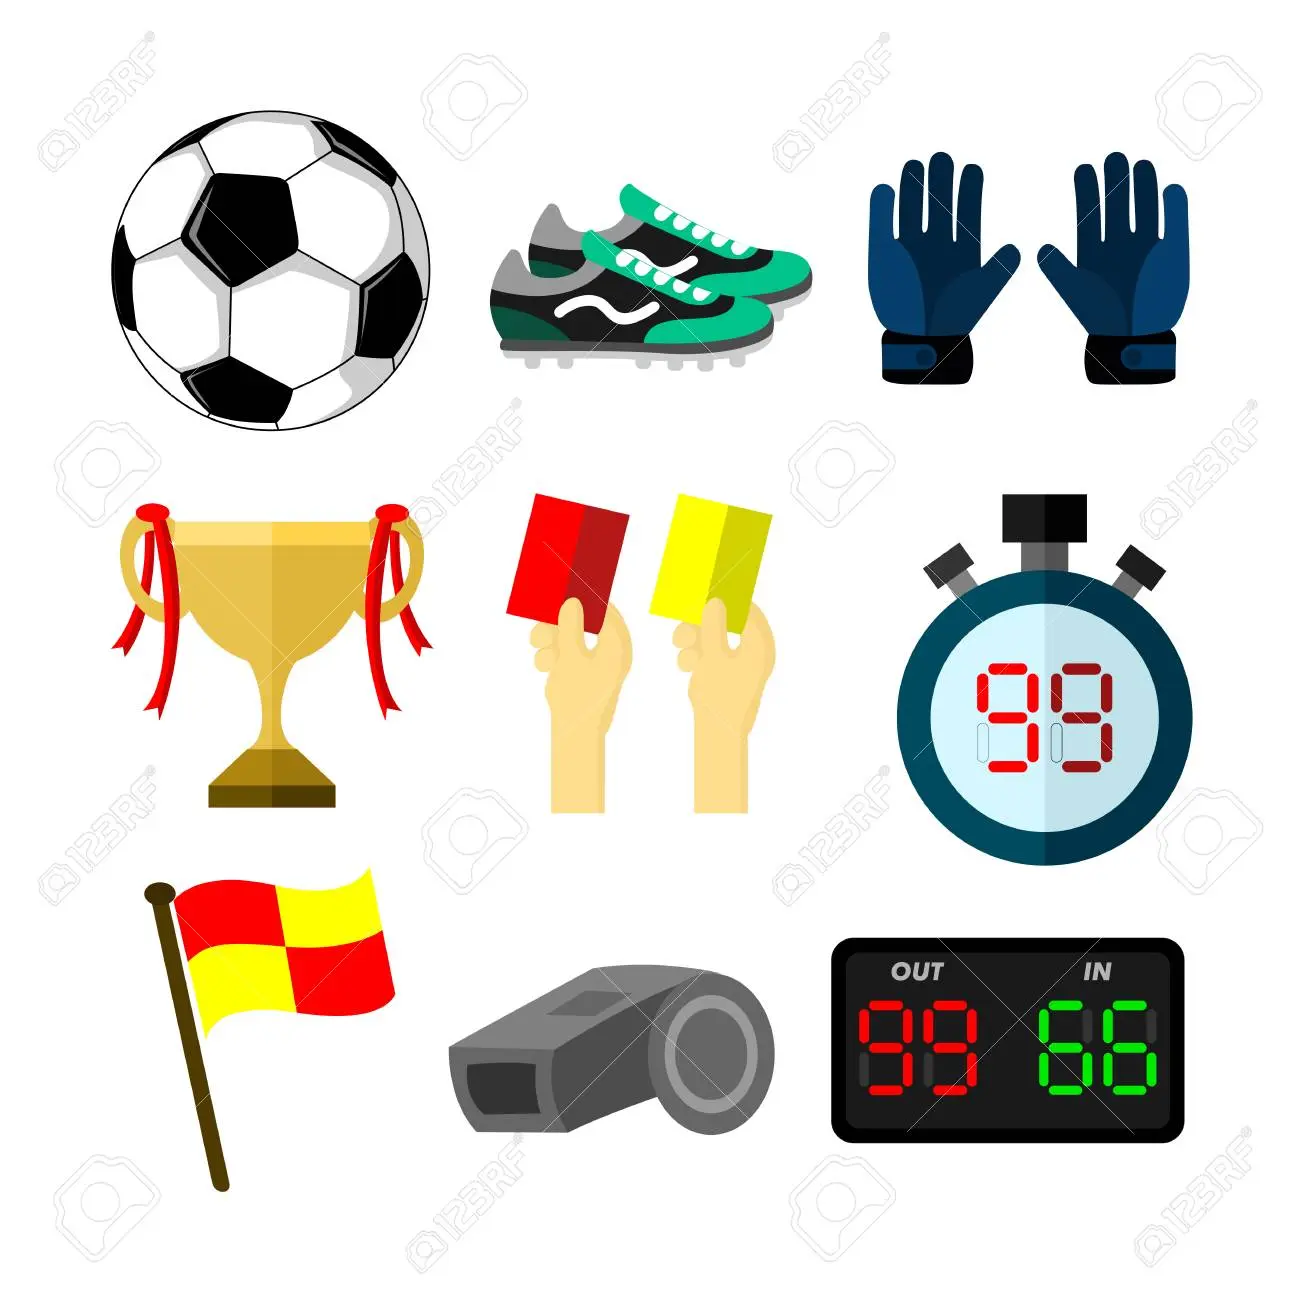 objetos para jugar futbol - Qué materiales se utilizan para entrenar fútbol